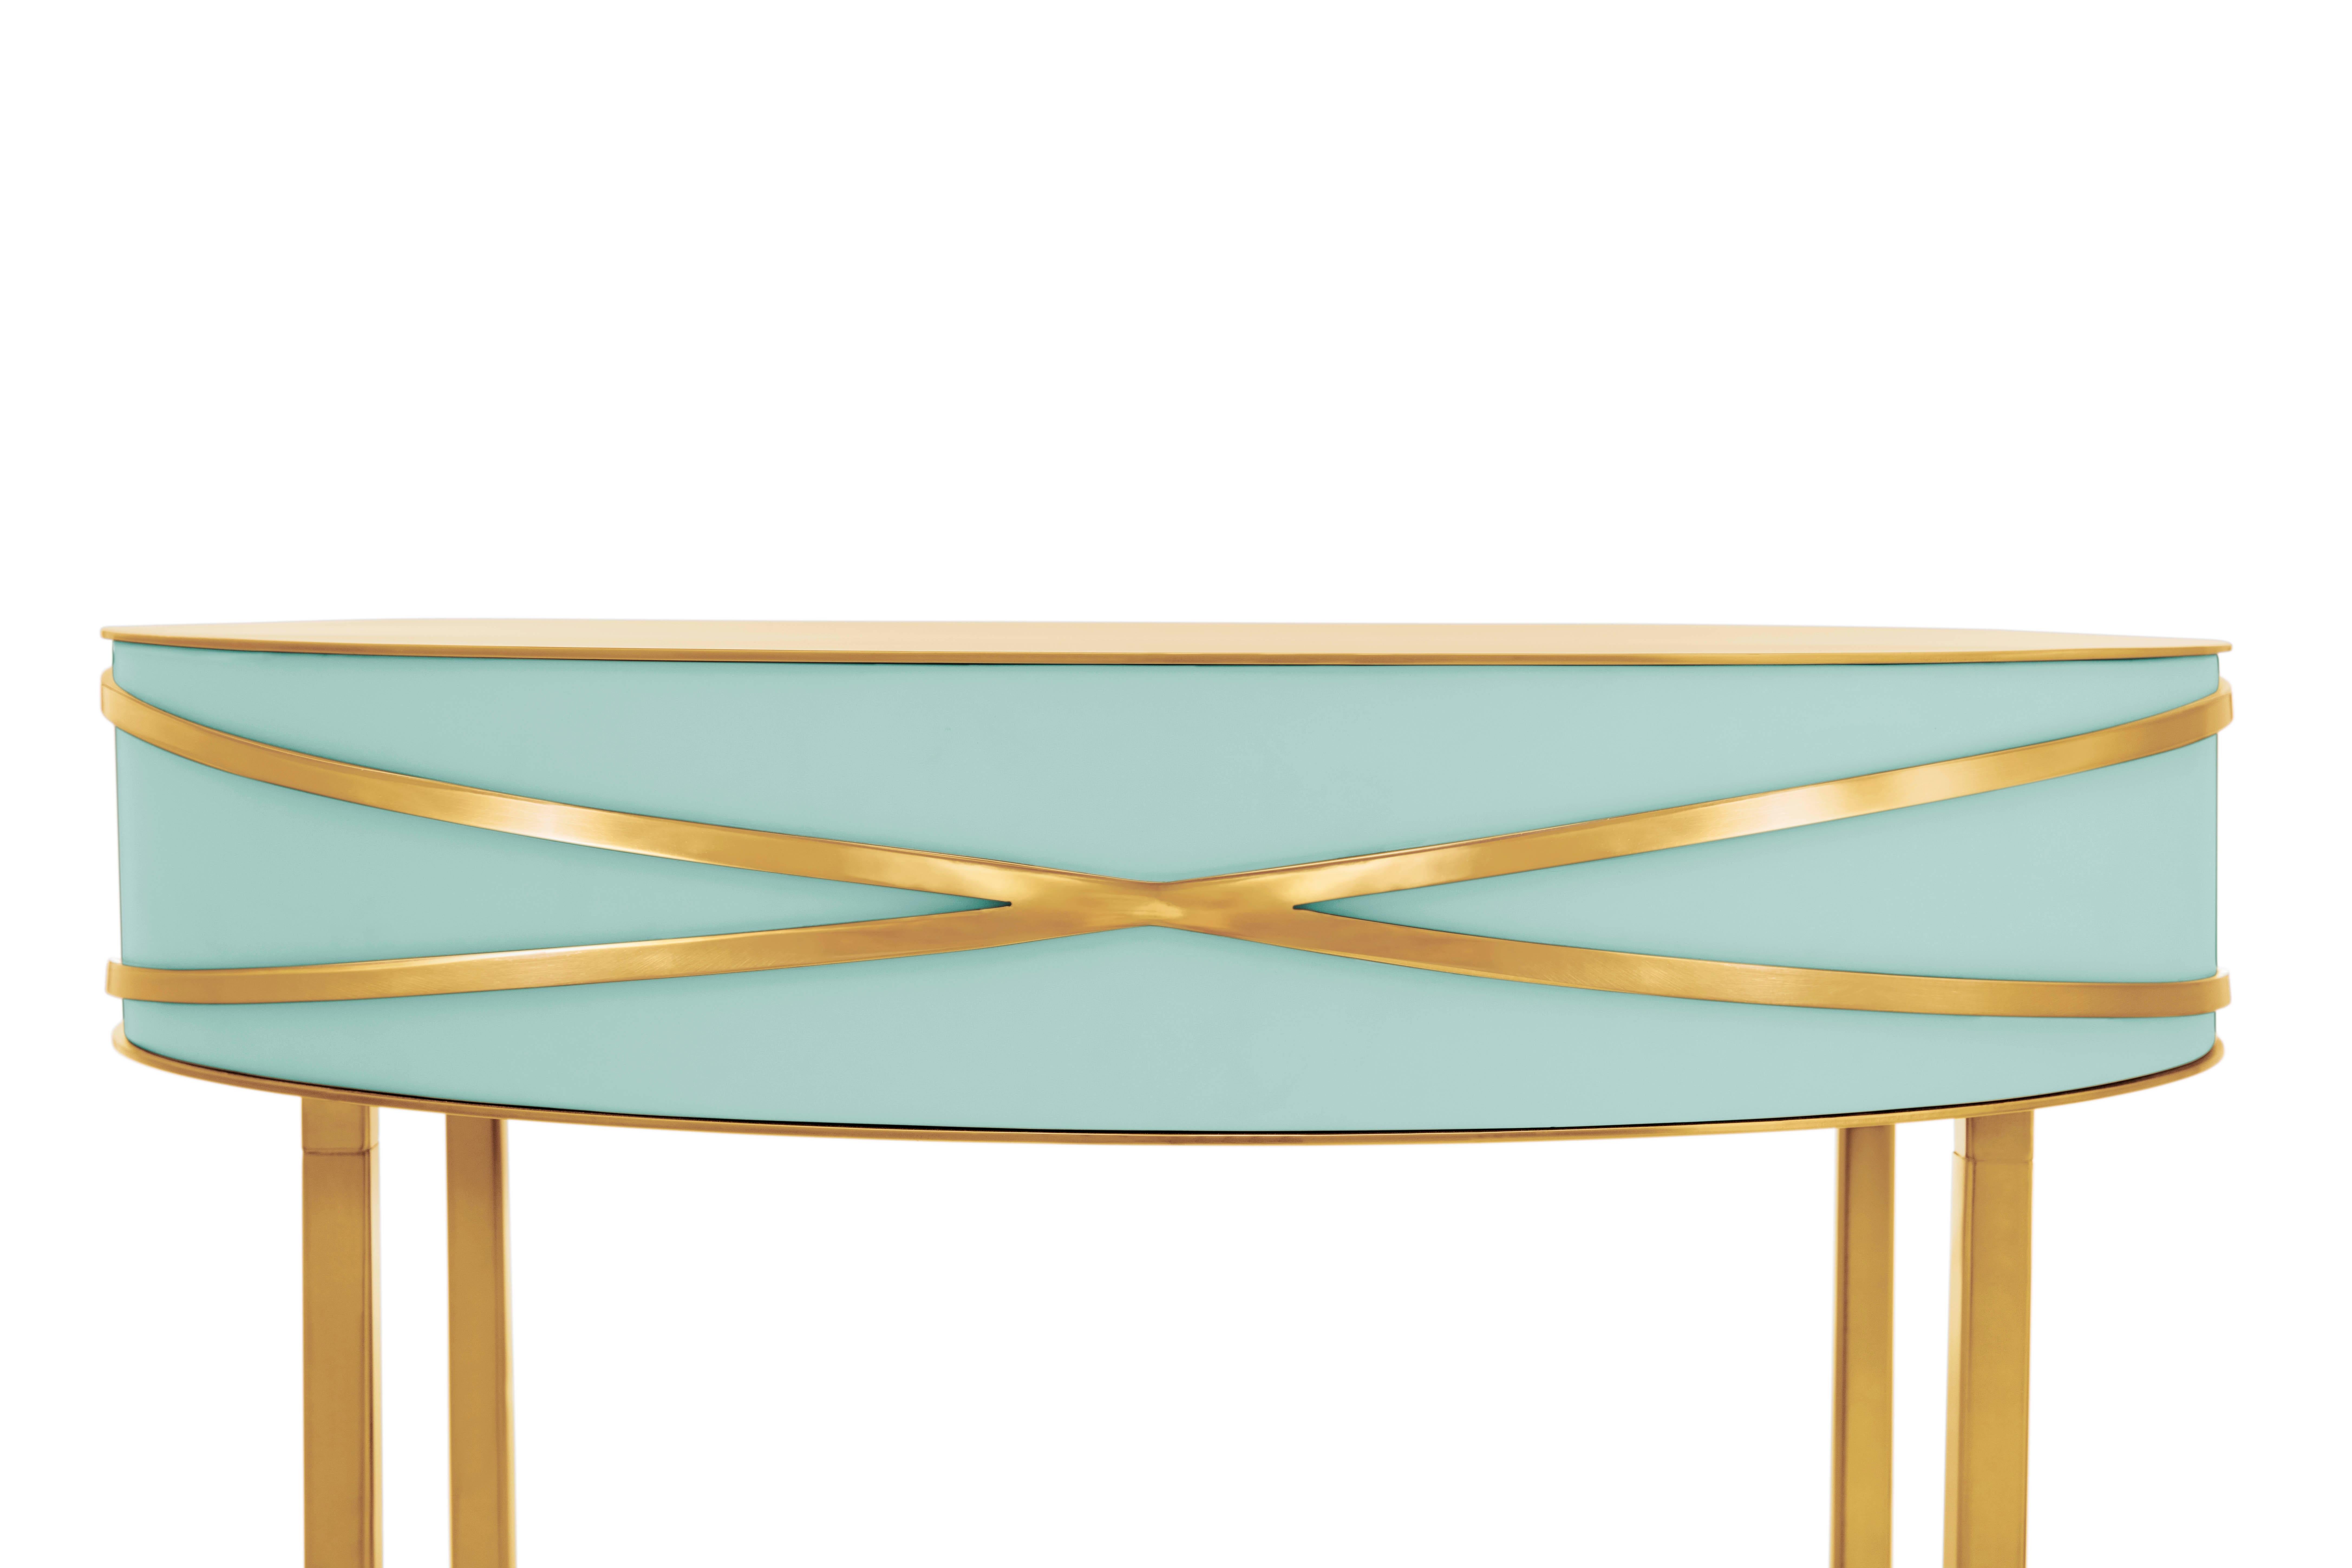 La table console ou table de chevet Stella vert menthe avec garnitures dorées de Nika Zupanc est une table console vert menthe avec un tiroir, et des garnitures métalliques dorées.

Nika Zupanc, designer slovène de renom, n'hésite jamais à redéfinir